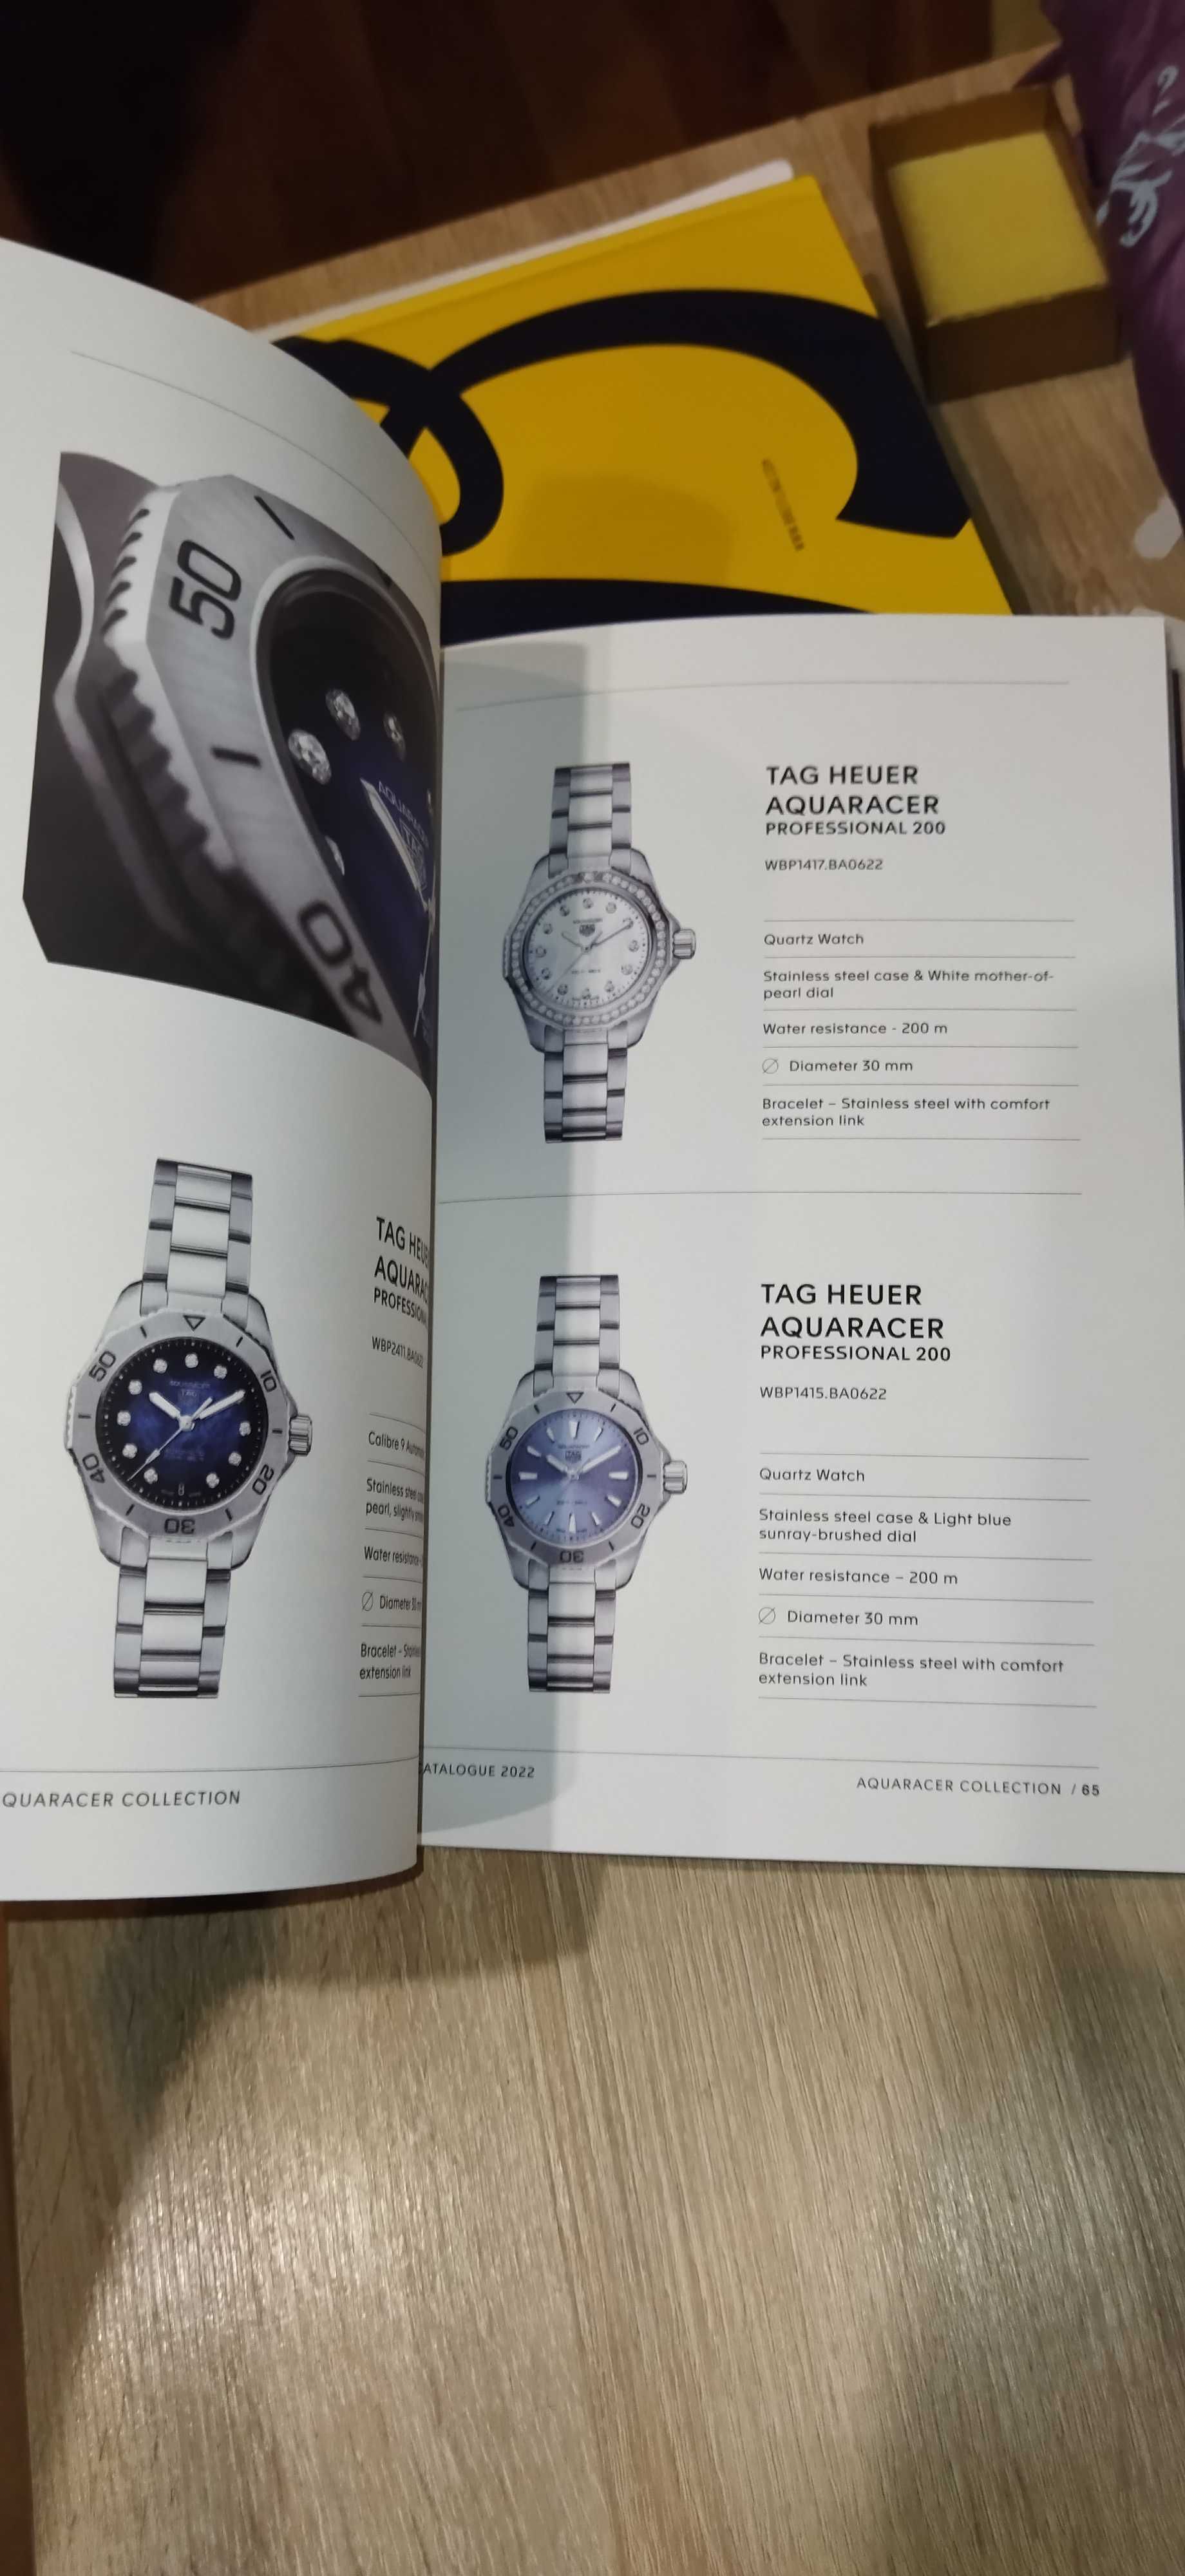 Luksusowy katalog zegarków marki TAG HEUER